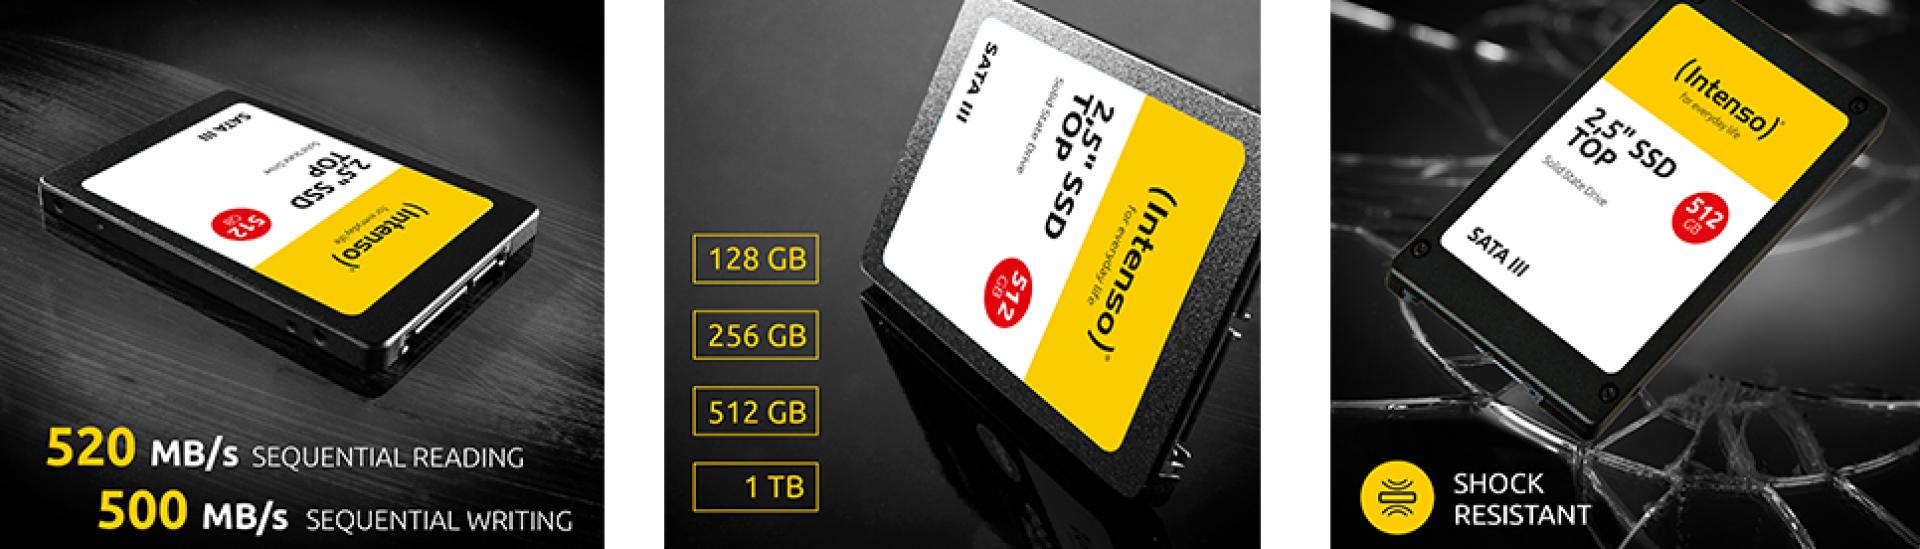 Intenso-SSD-128GB_LTu